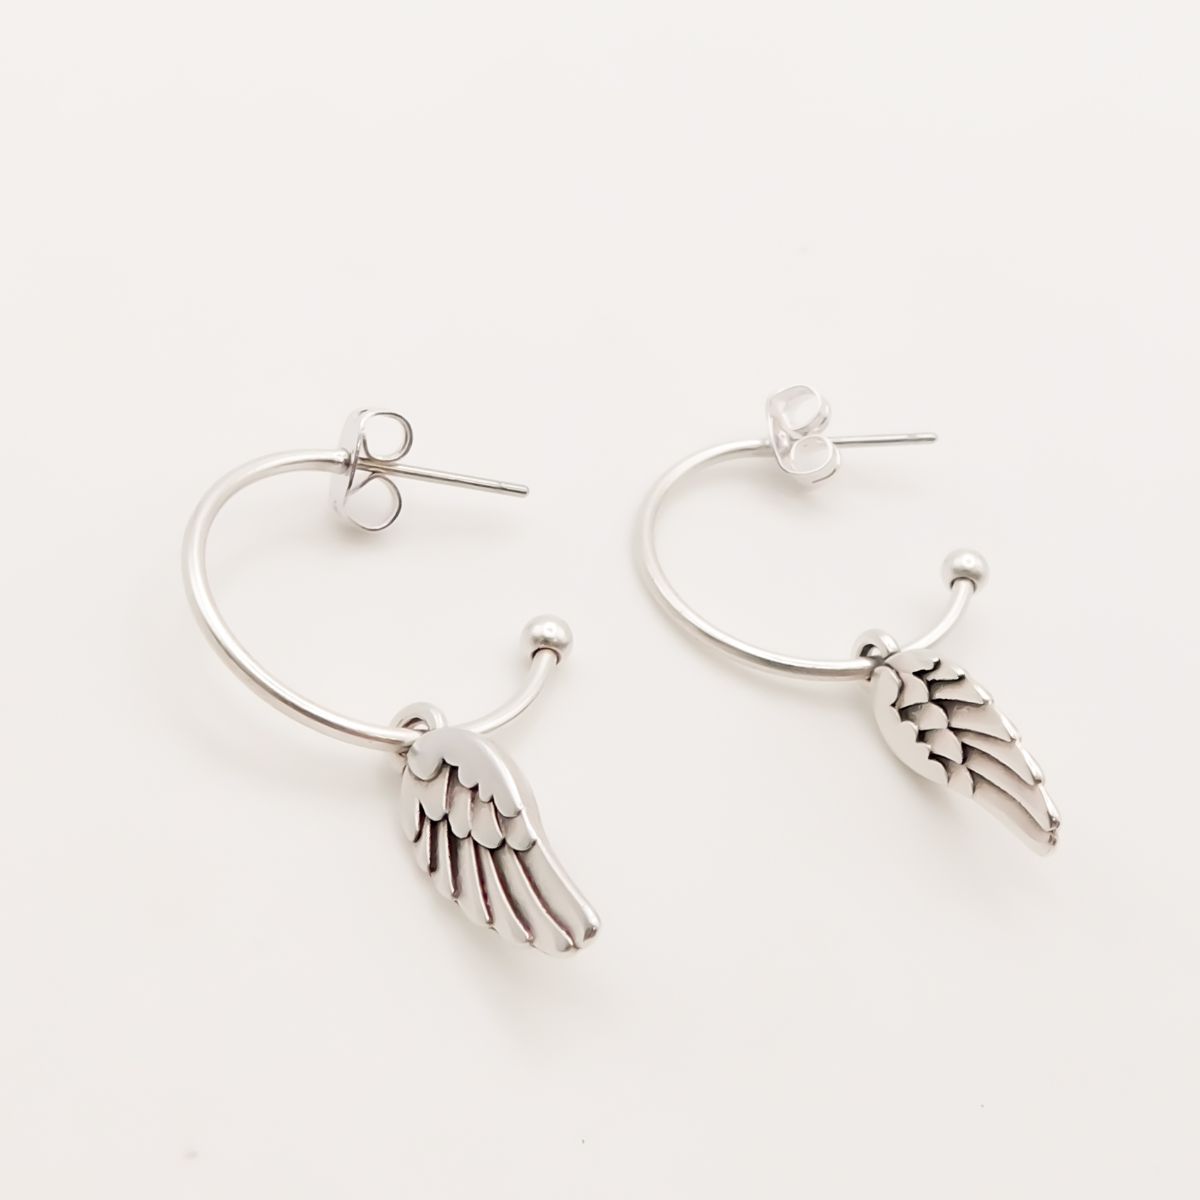 Angel Wing Earring  Mens BlackSilver Hoop Earring  Unisex Hoops   Oxidized Black Sterling Silver Jewellery for